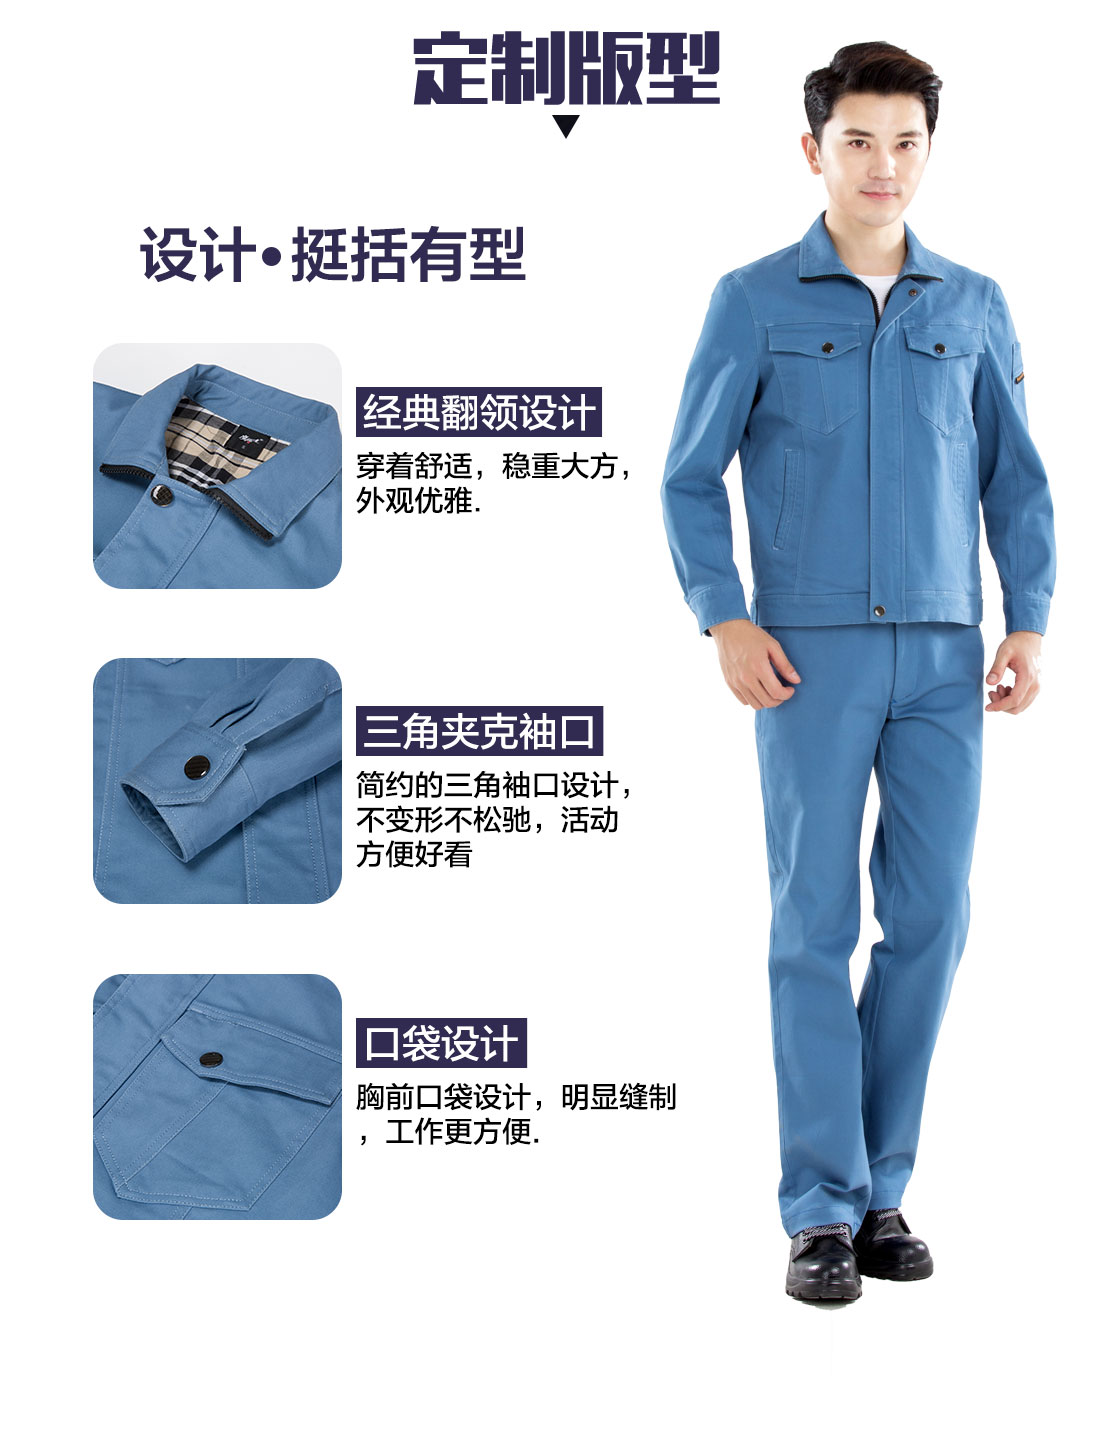 新款浅蓝色秋季工作服的3D立体版型设计